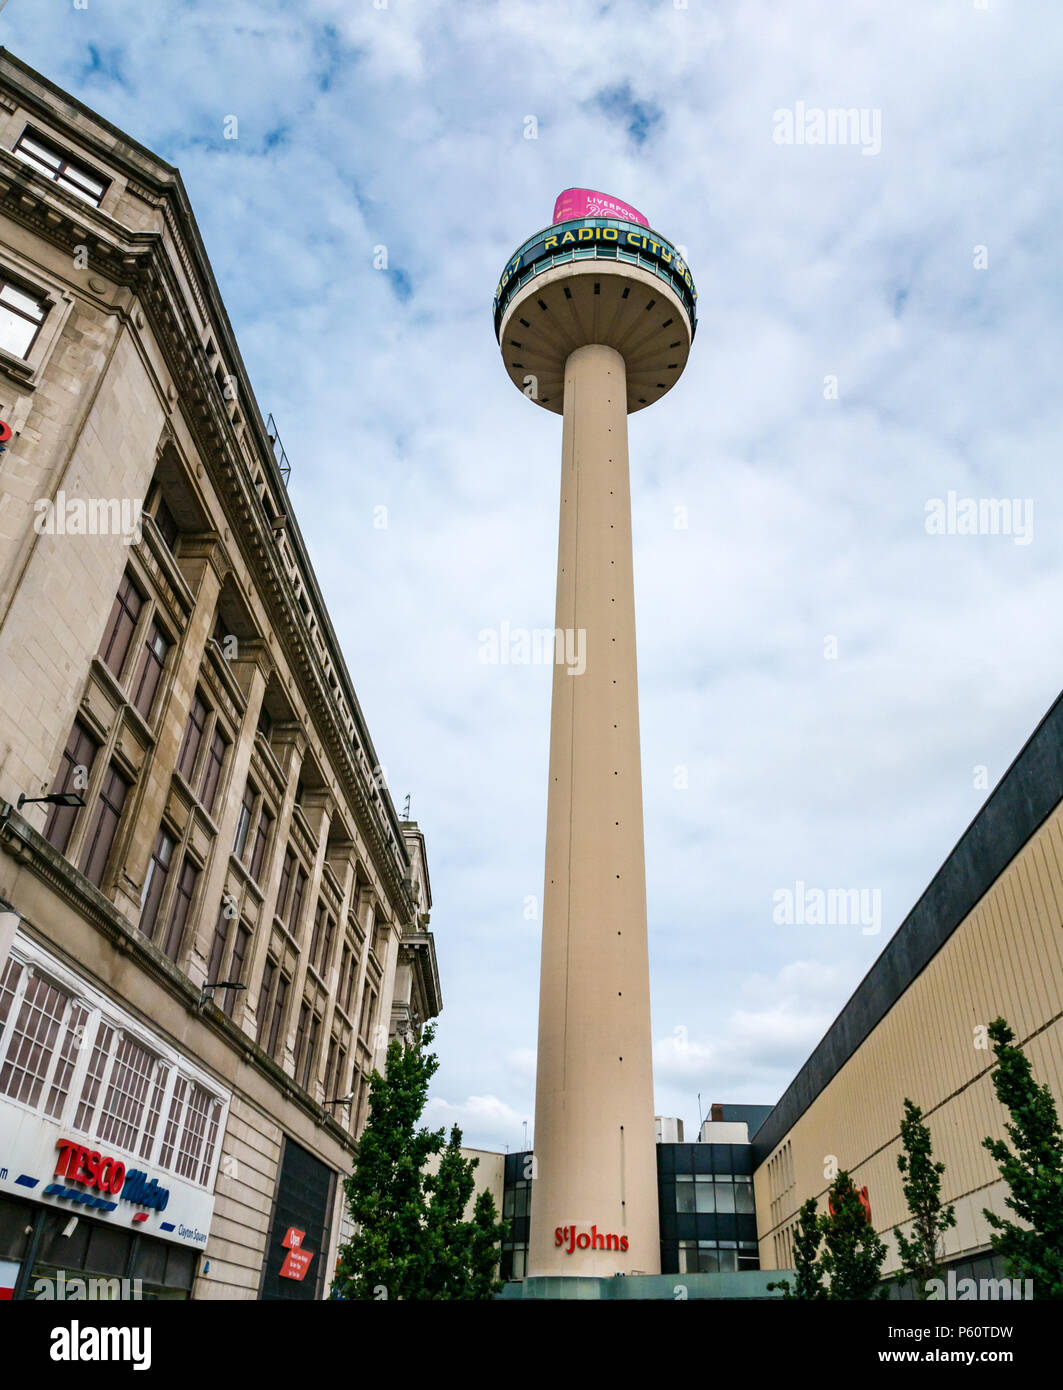 Anni sessanta Radio City Tower o St Johns faro torre di osservazione, Liverpool, in Inghilterra, Regno Unito nani altri edifici Foto Stock